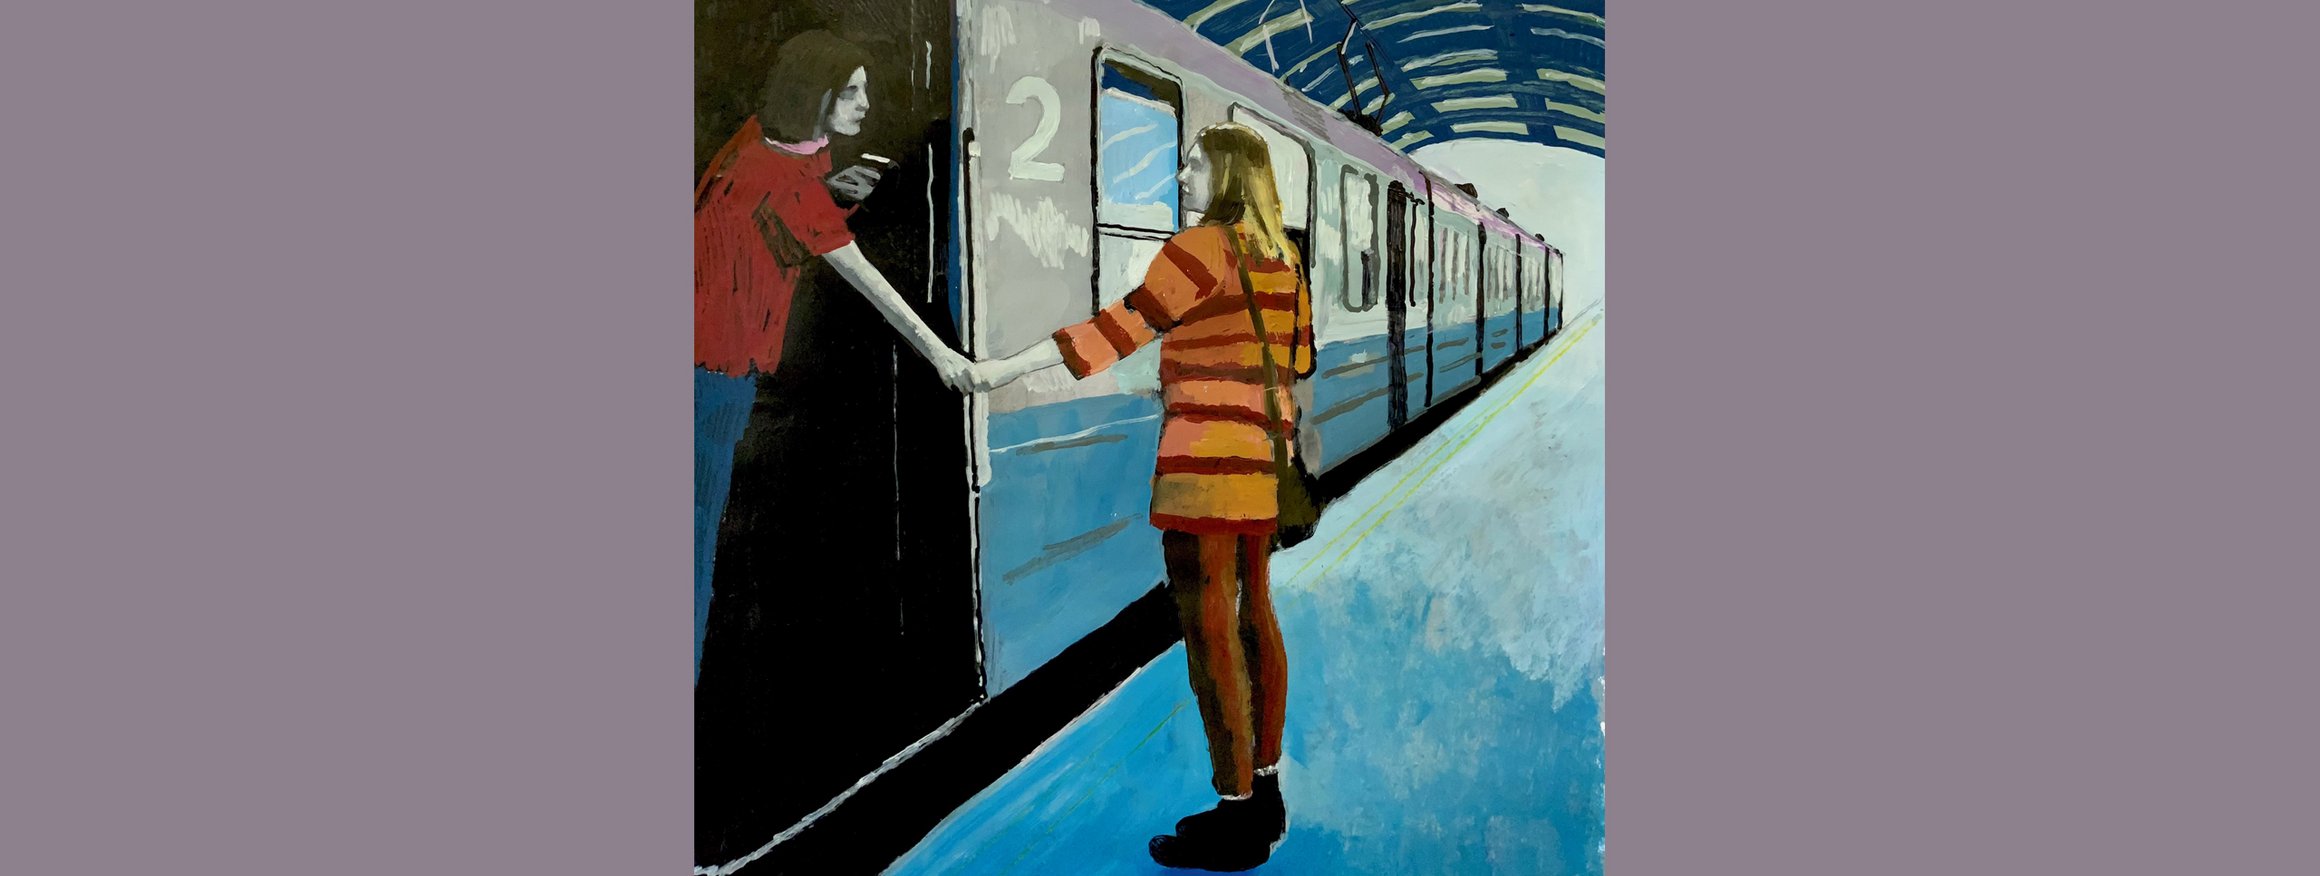 Die Illustration zeigt zwei Frauen, die eine steht im Eingang des Zuges, die andere steht auf dem Bahnsteig, die sich zum Abschied die Hände halten.